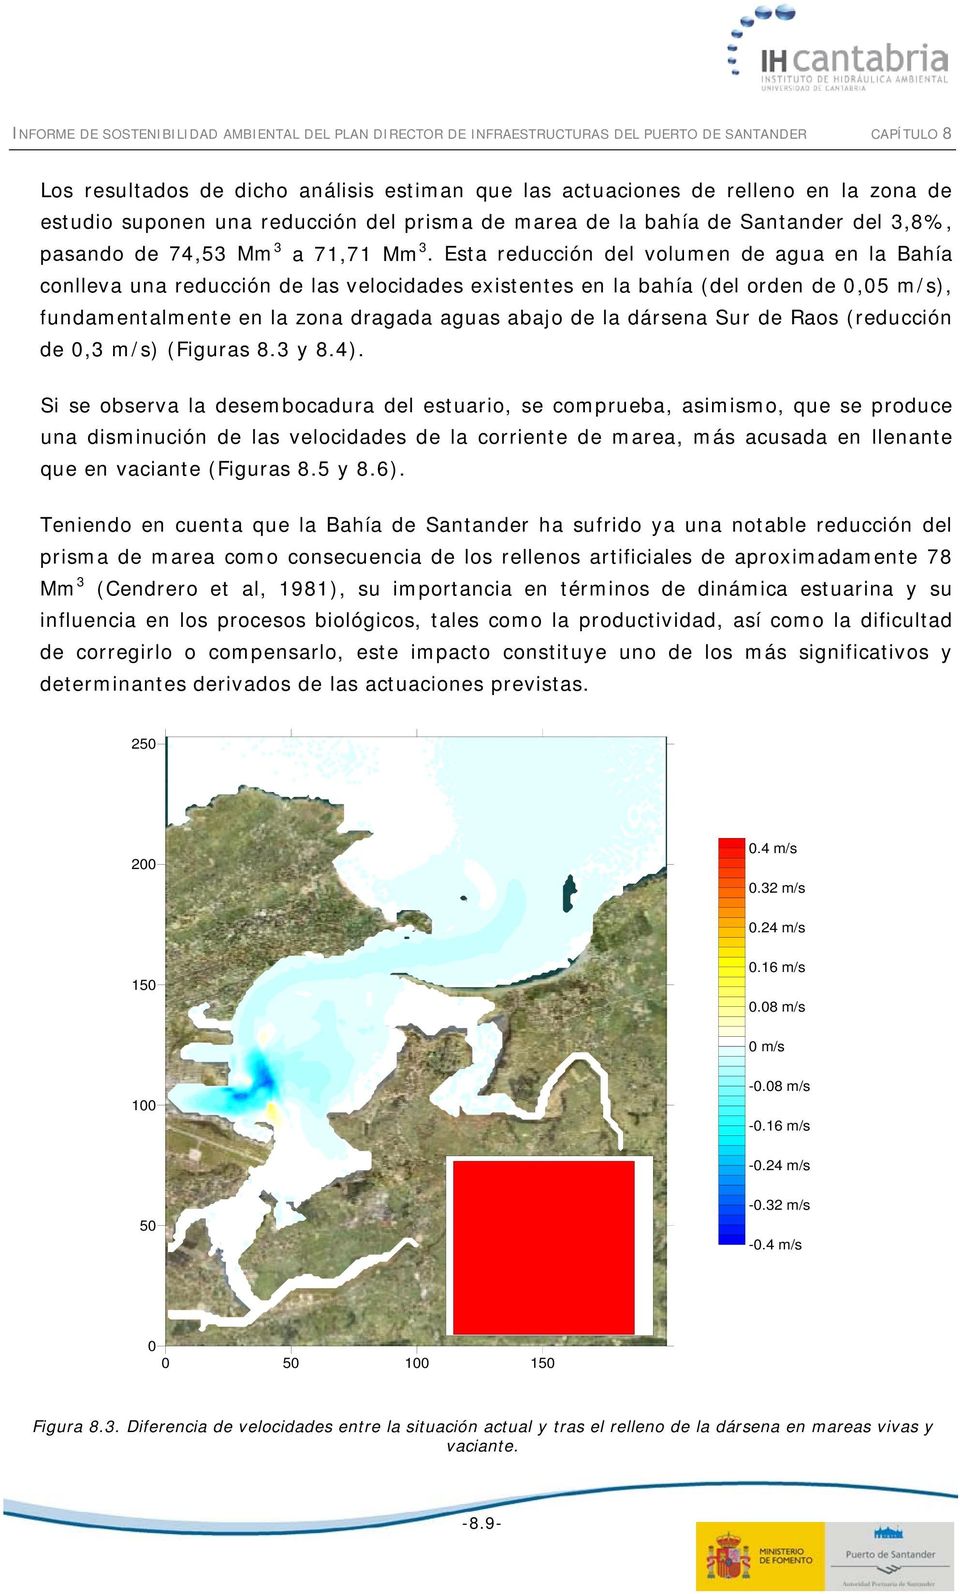 Esta reducción del volumen de agua en la Bahía conlleva una reducción de las velocidades existentes en la bahía (del orden de 0,05 m/s), fundamentalmente en la zona dragada aguas abajo de la dársena